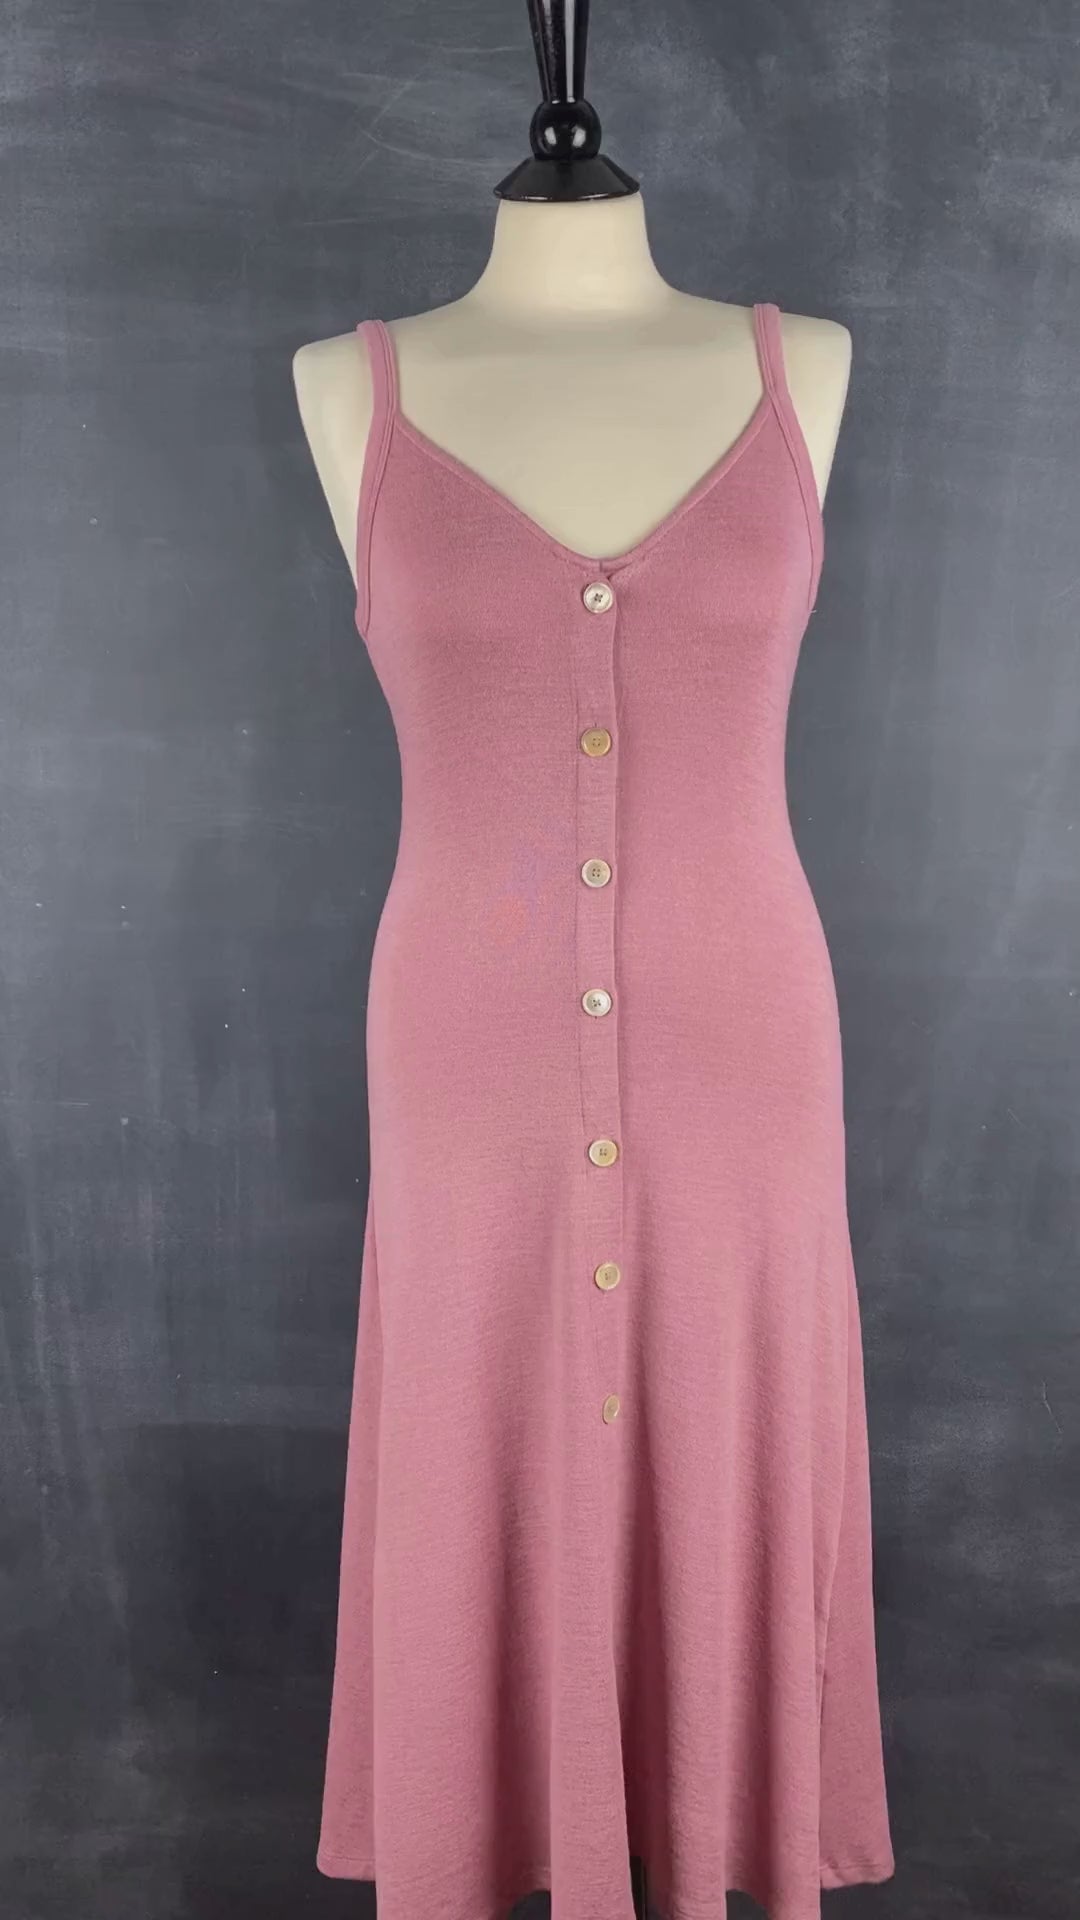 Robe boutonnée vieux rose Wilfred Free, taille medium. Vue de la vidéo qui présente tous les détails de la robe.